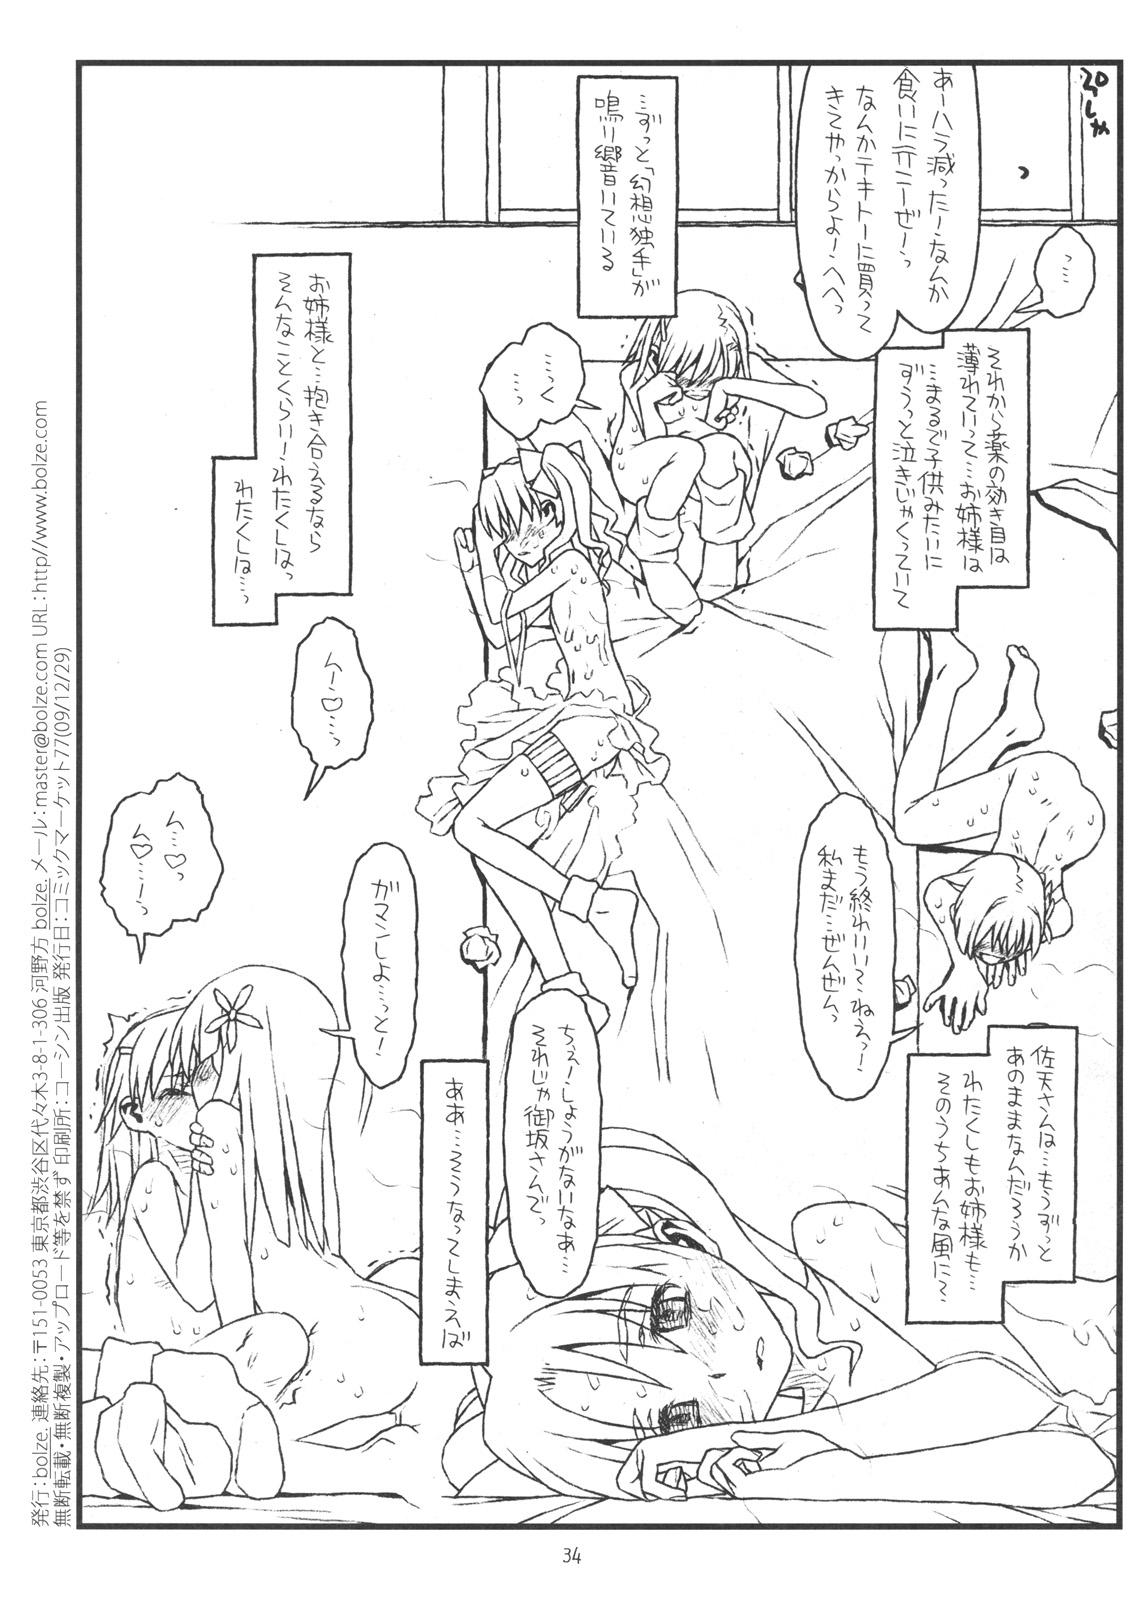 Hymen HAPPINESS IS A RAILGUN - Toaru kagaku no railgun Lez Fuck - Page 33